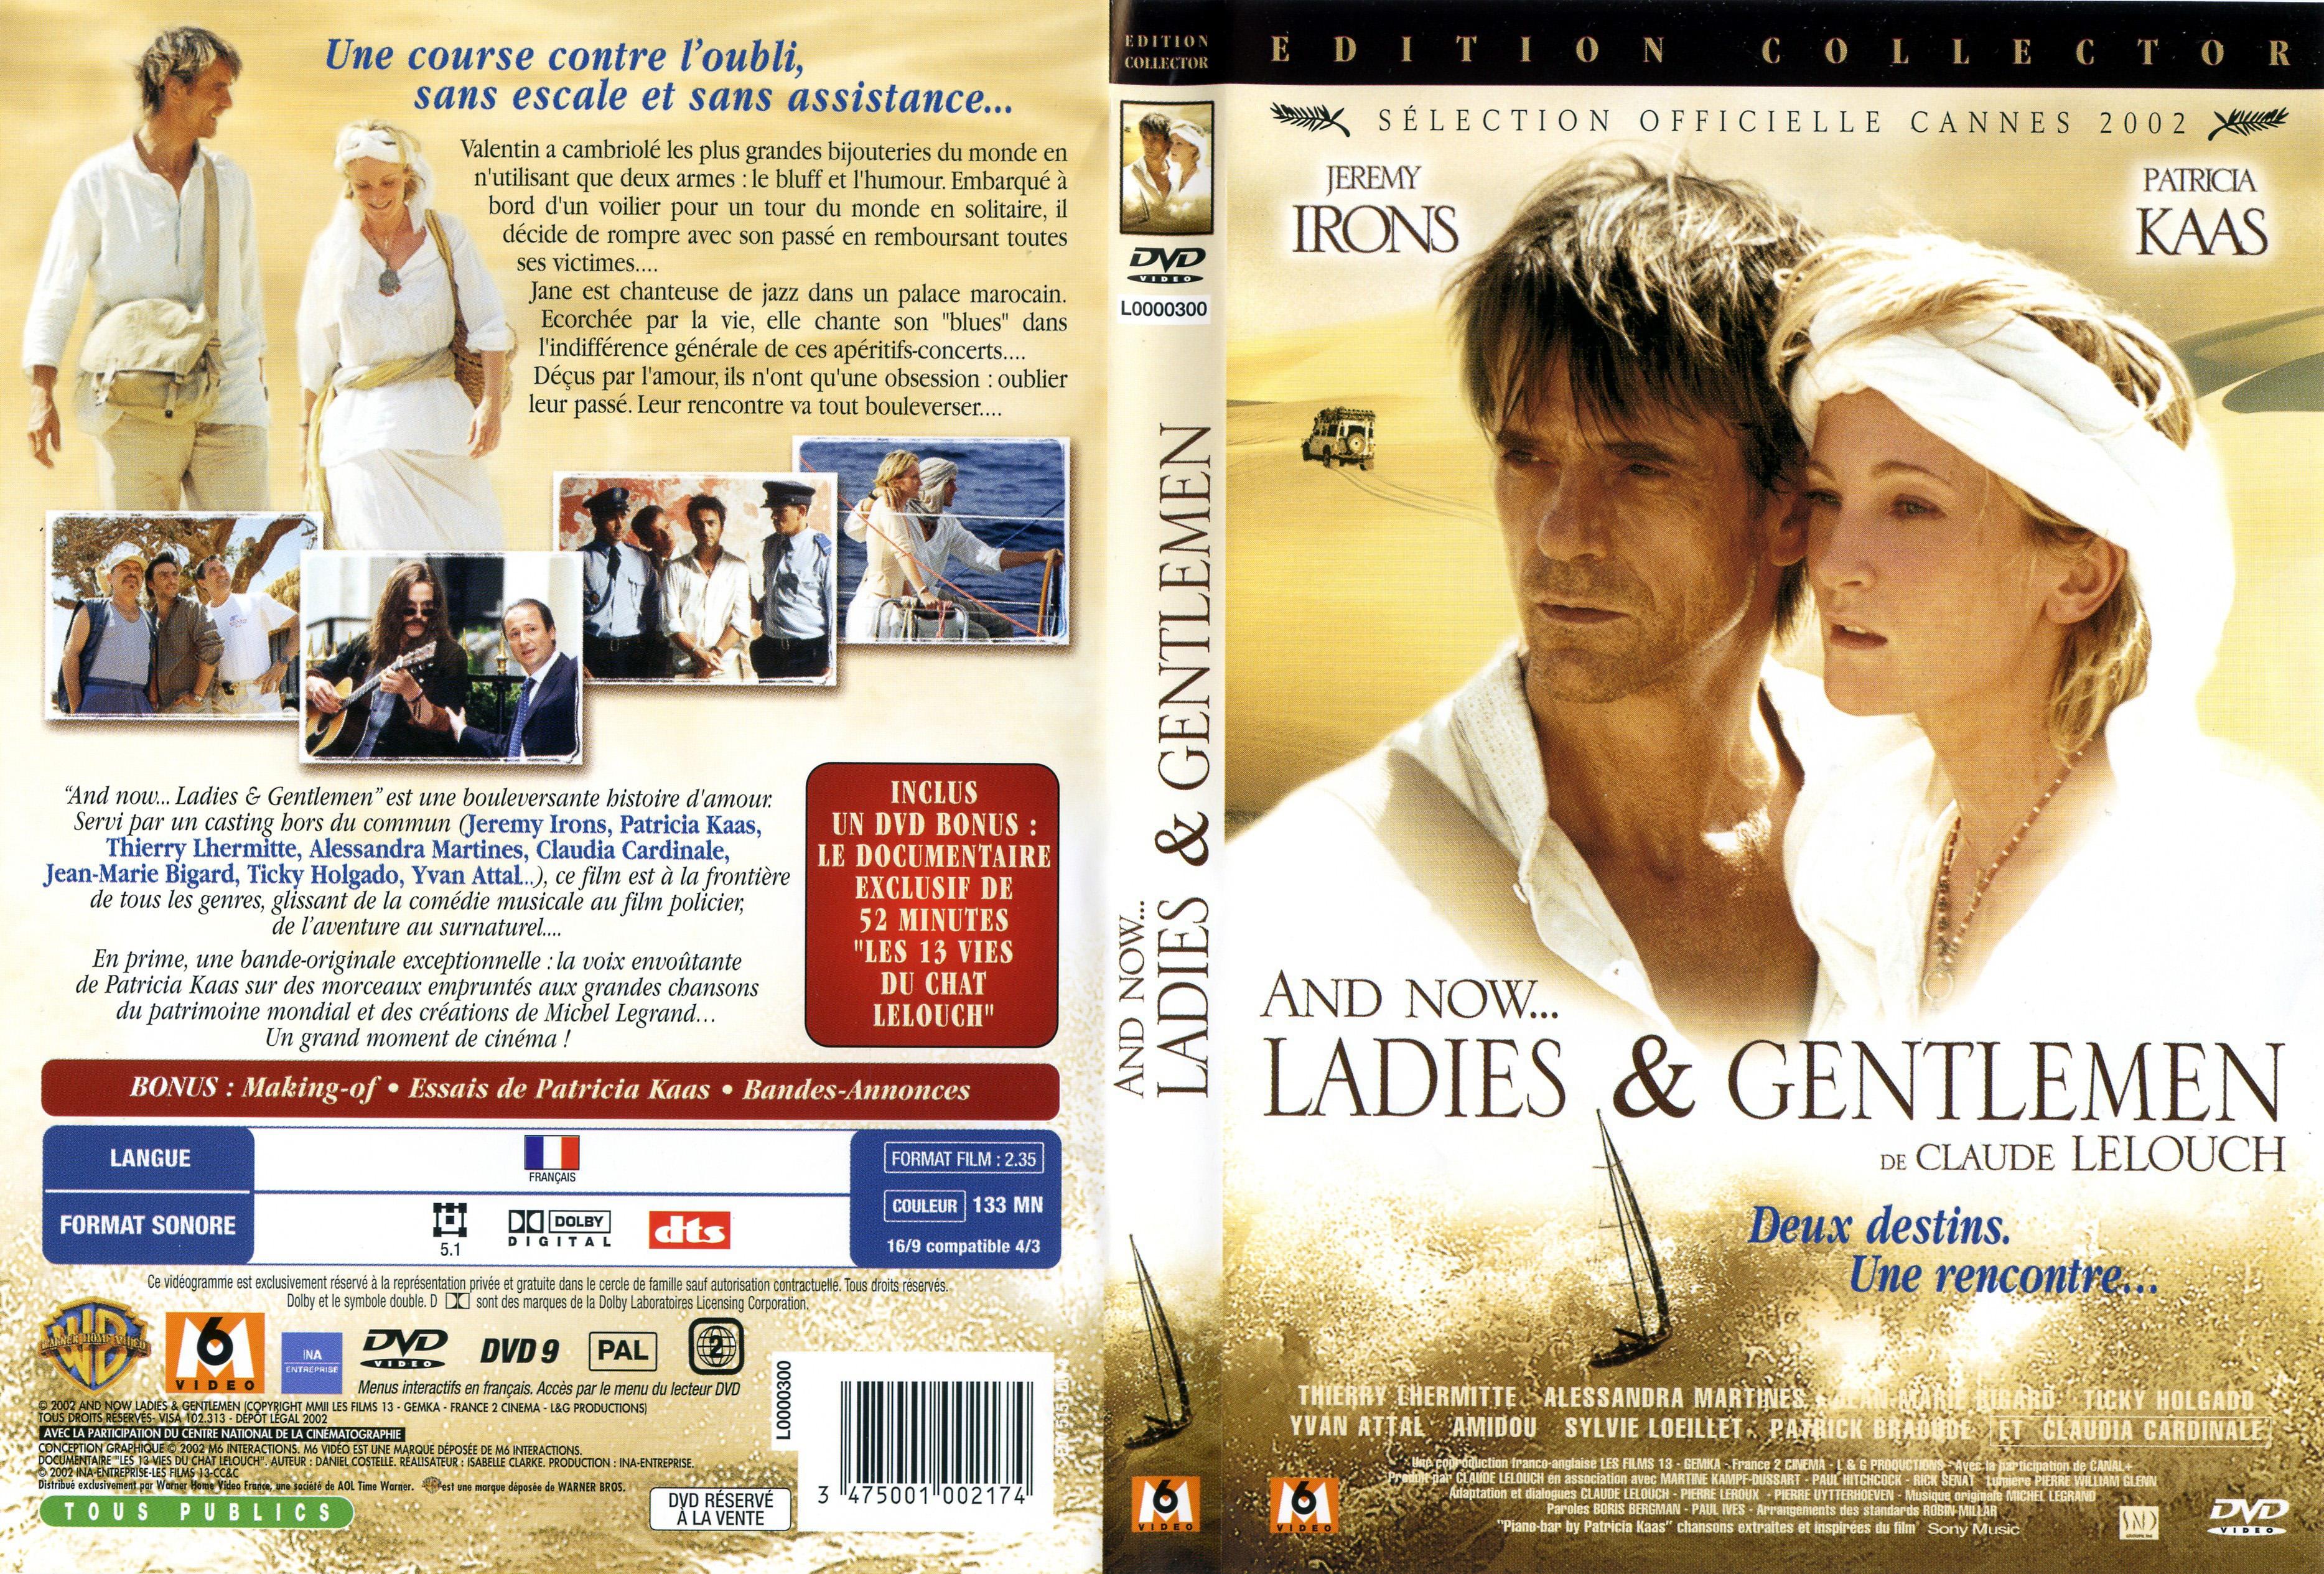 Jaquette DVD de And now ladies and gentlemen - Cinéma Passion3735 x 2530